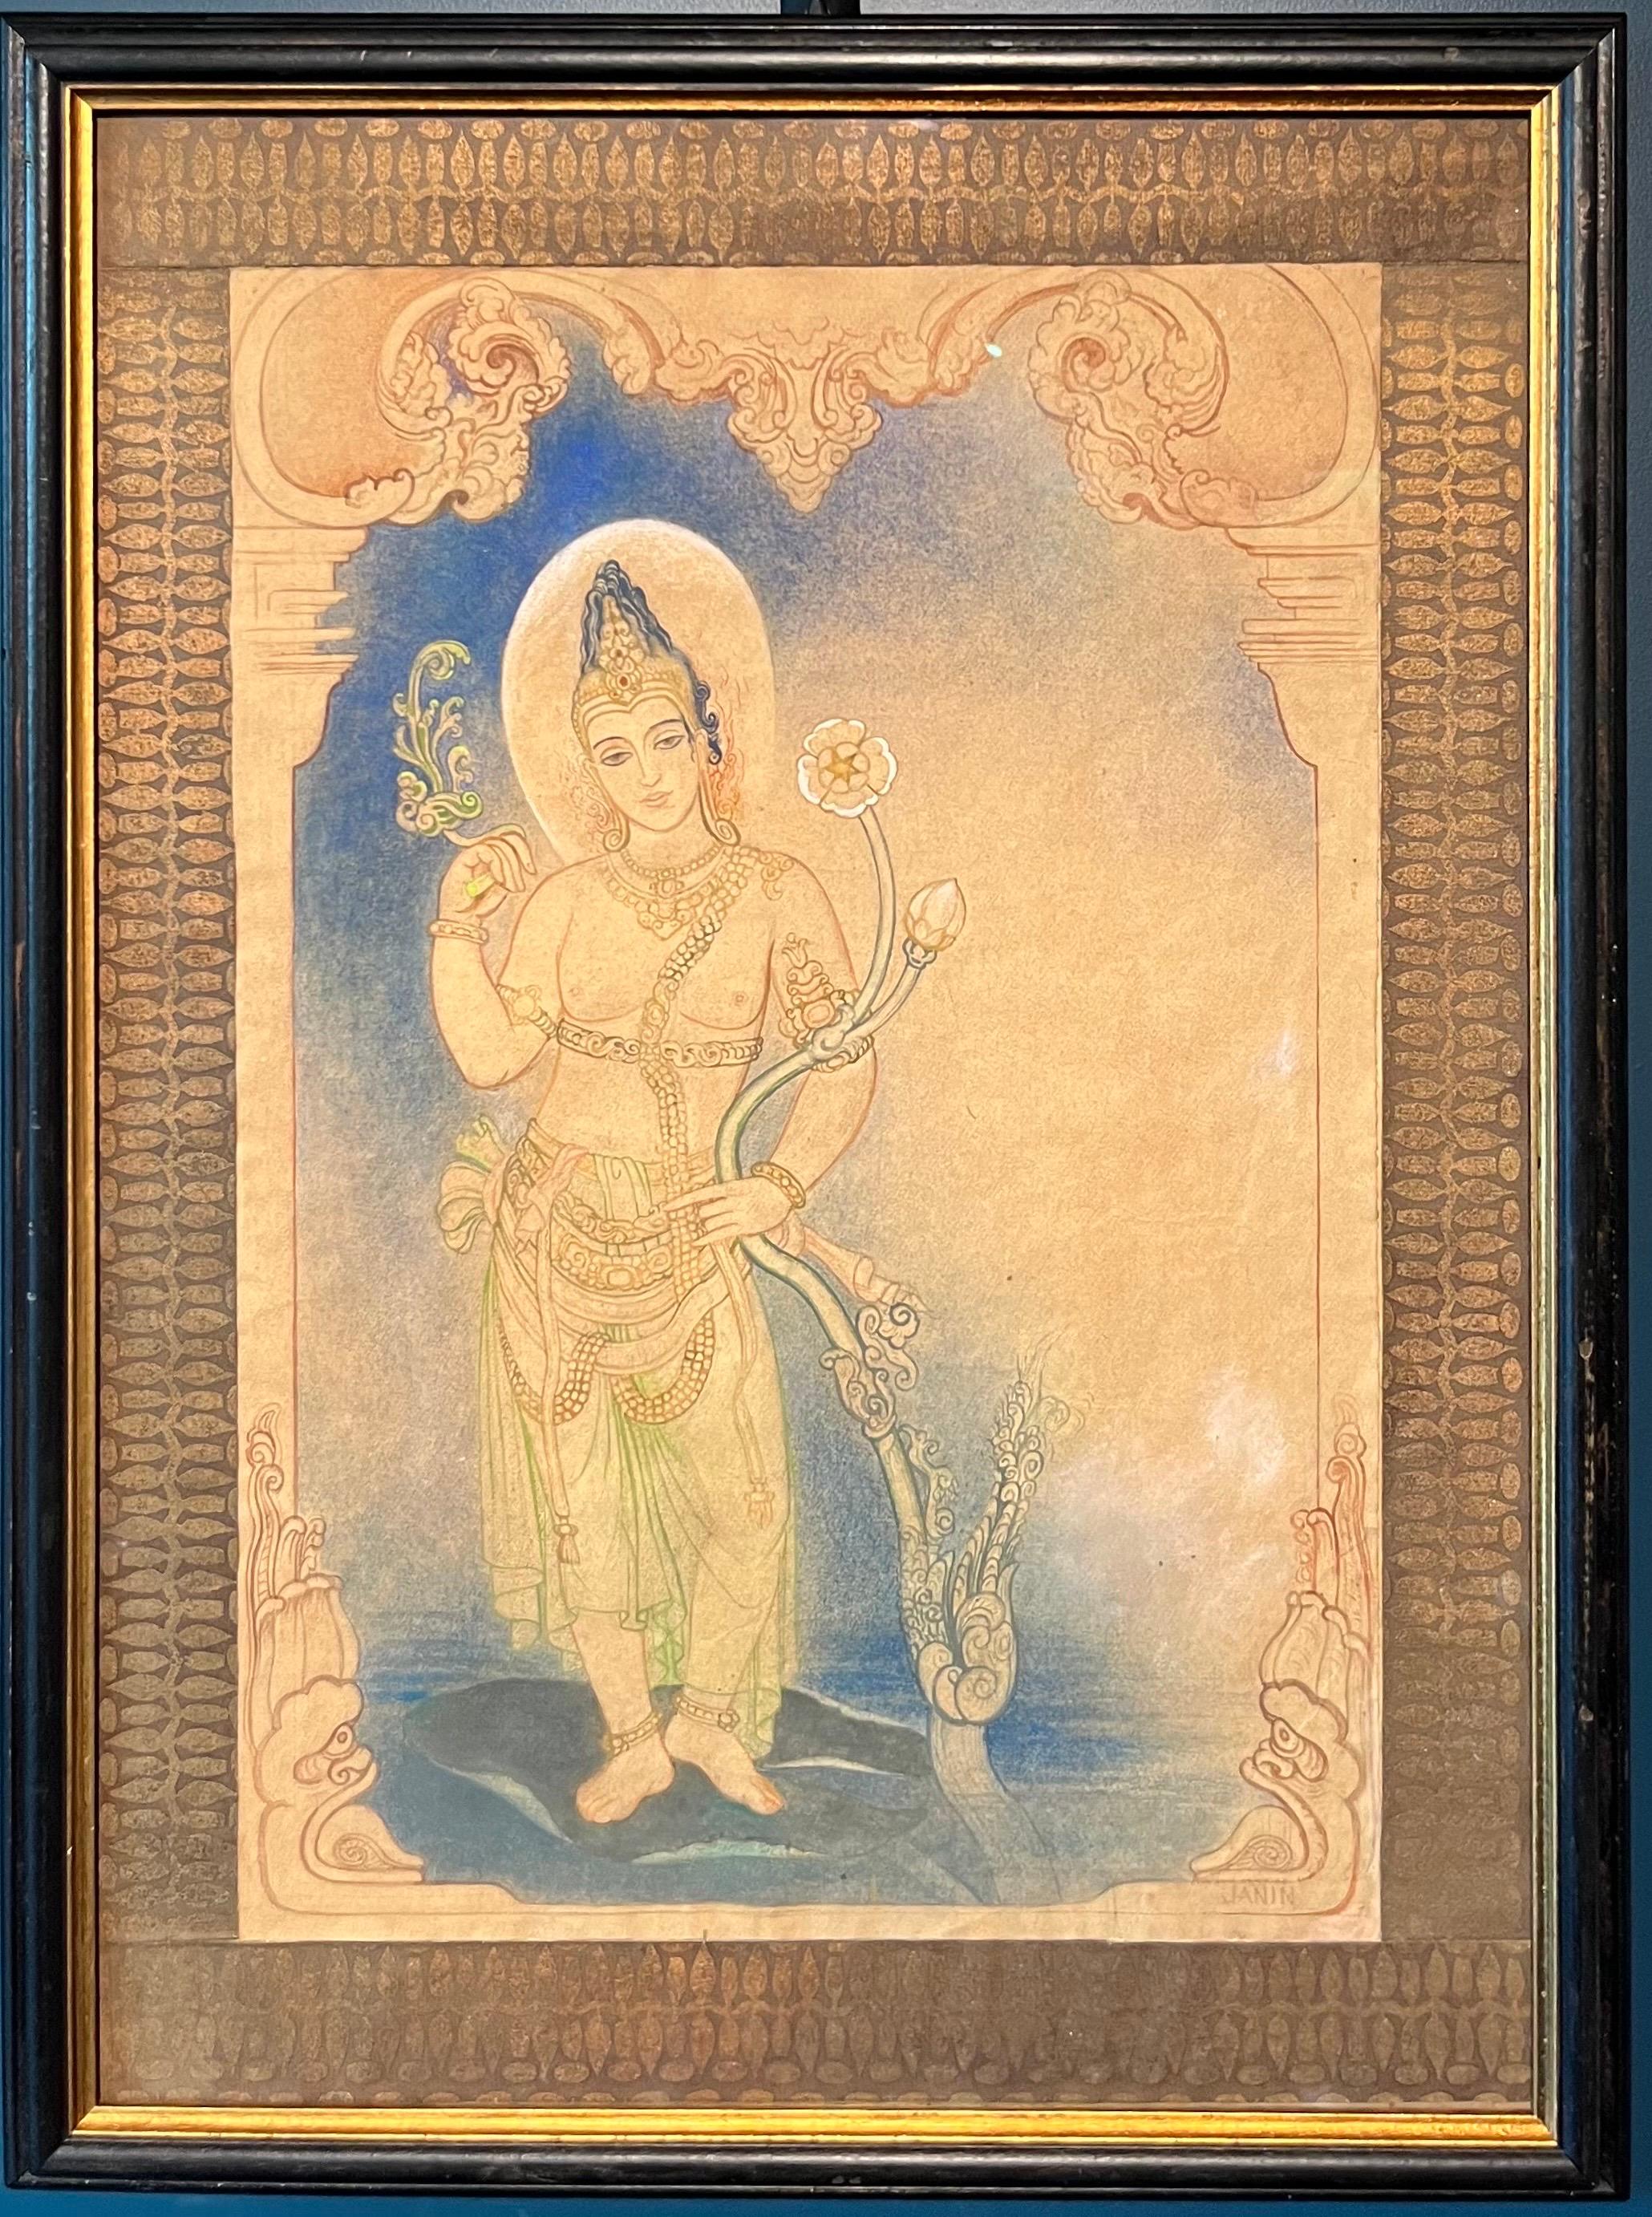 Louise Janin Nude – "Divinità induista" Tecnica mista su carta  cm. 48 x 33   1920 ca.